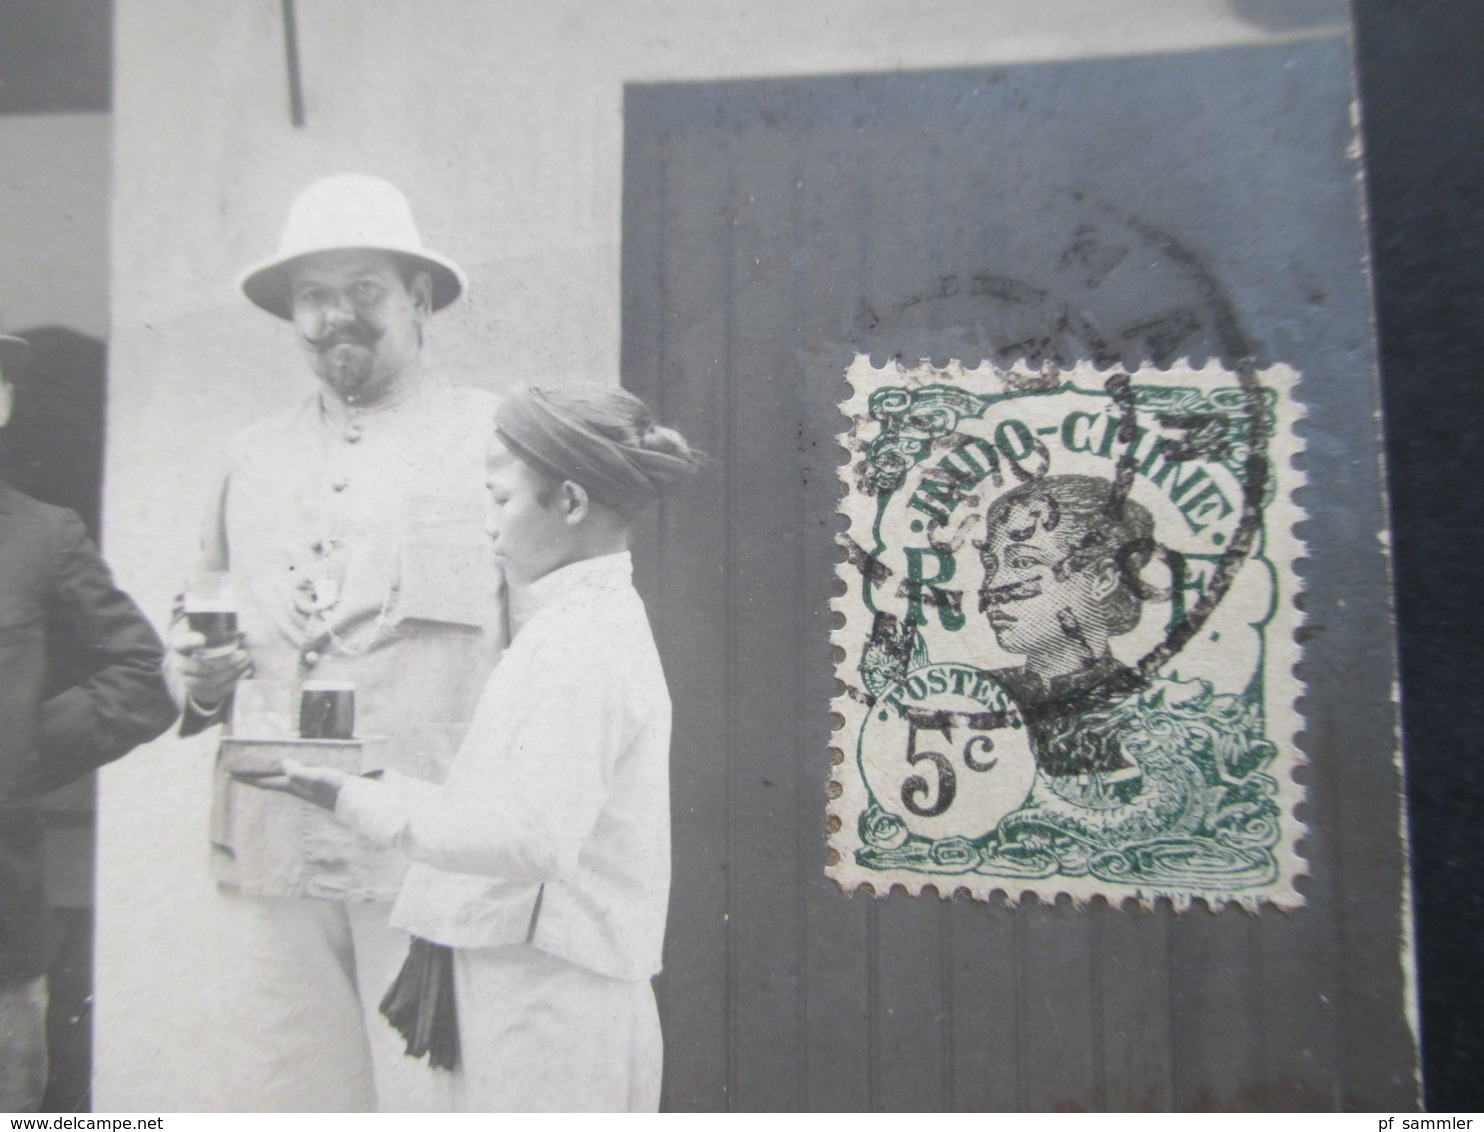 Asien Vietnam Indo Chine 1909 Echtfoto AK Expedition Herren Werden Bedient / Trinken Bier. Roter Kastenstempel - Briefe U. Dokumente